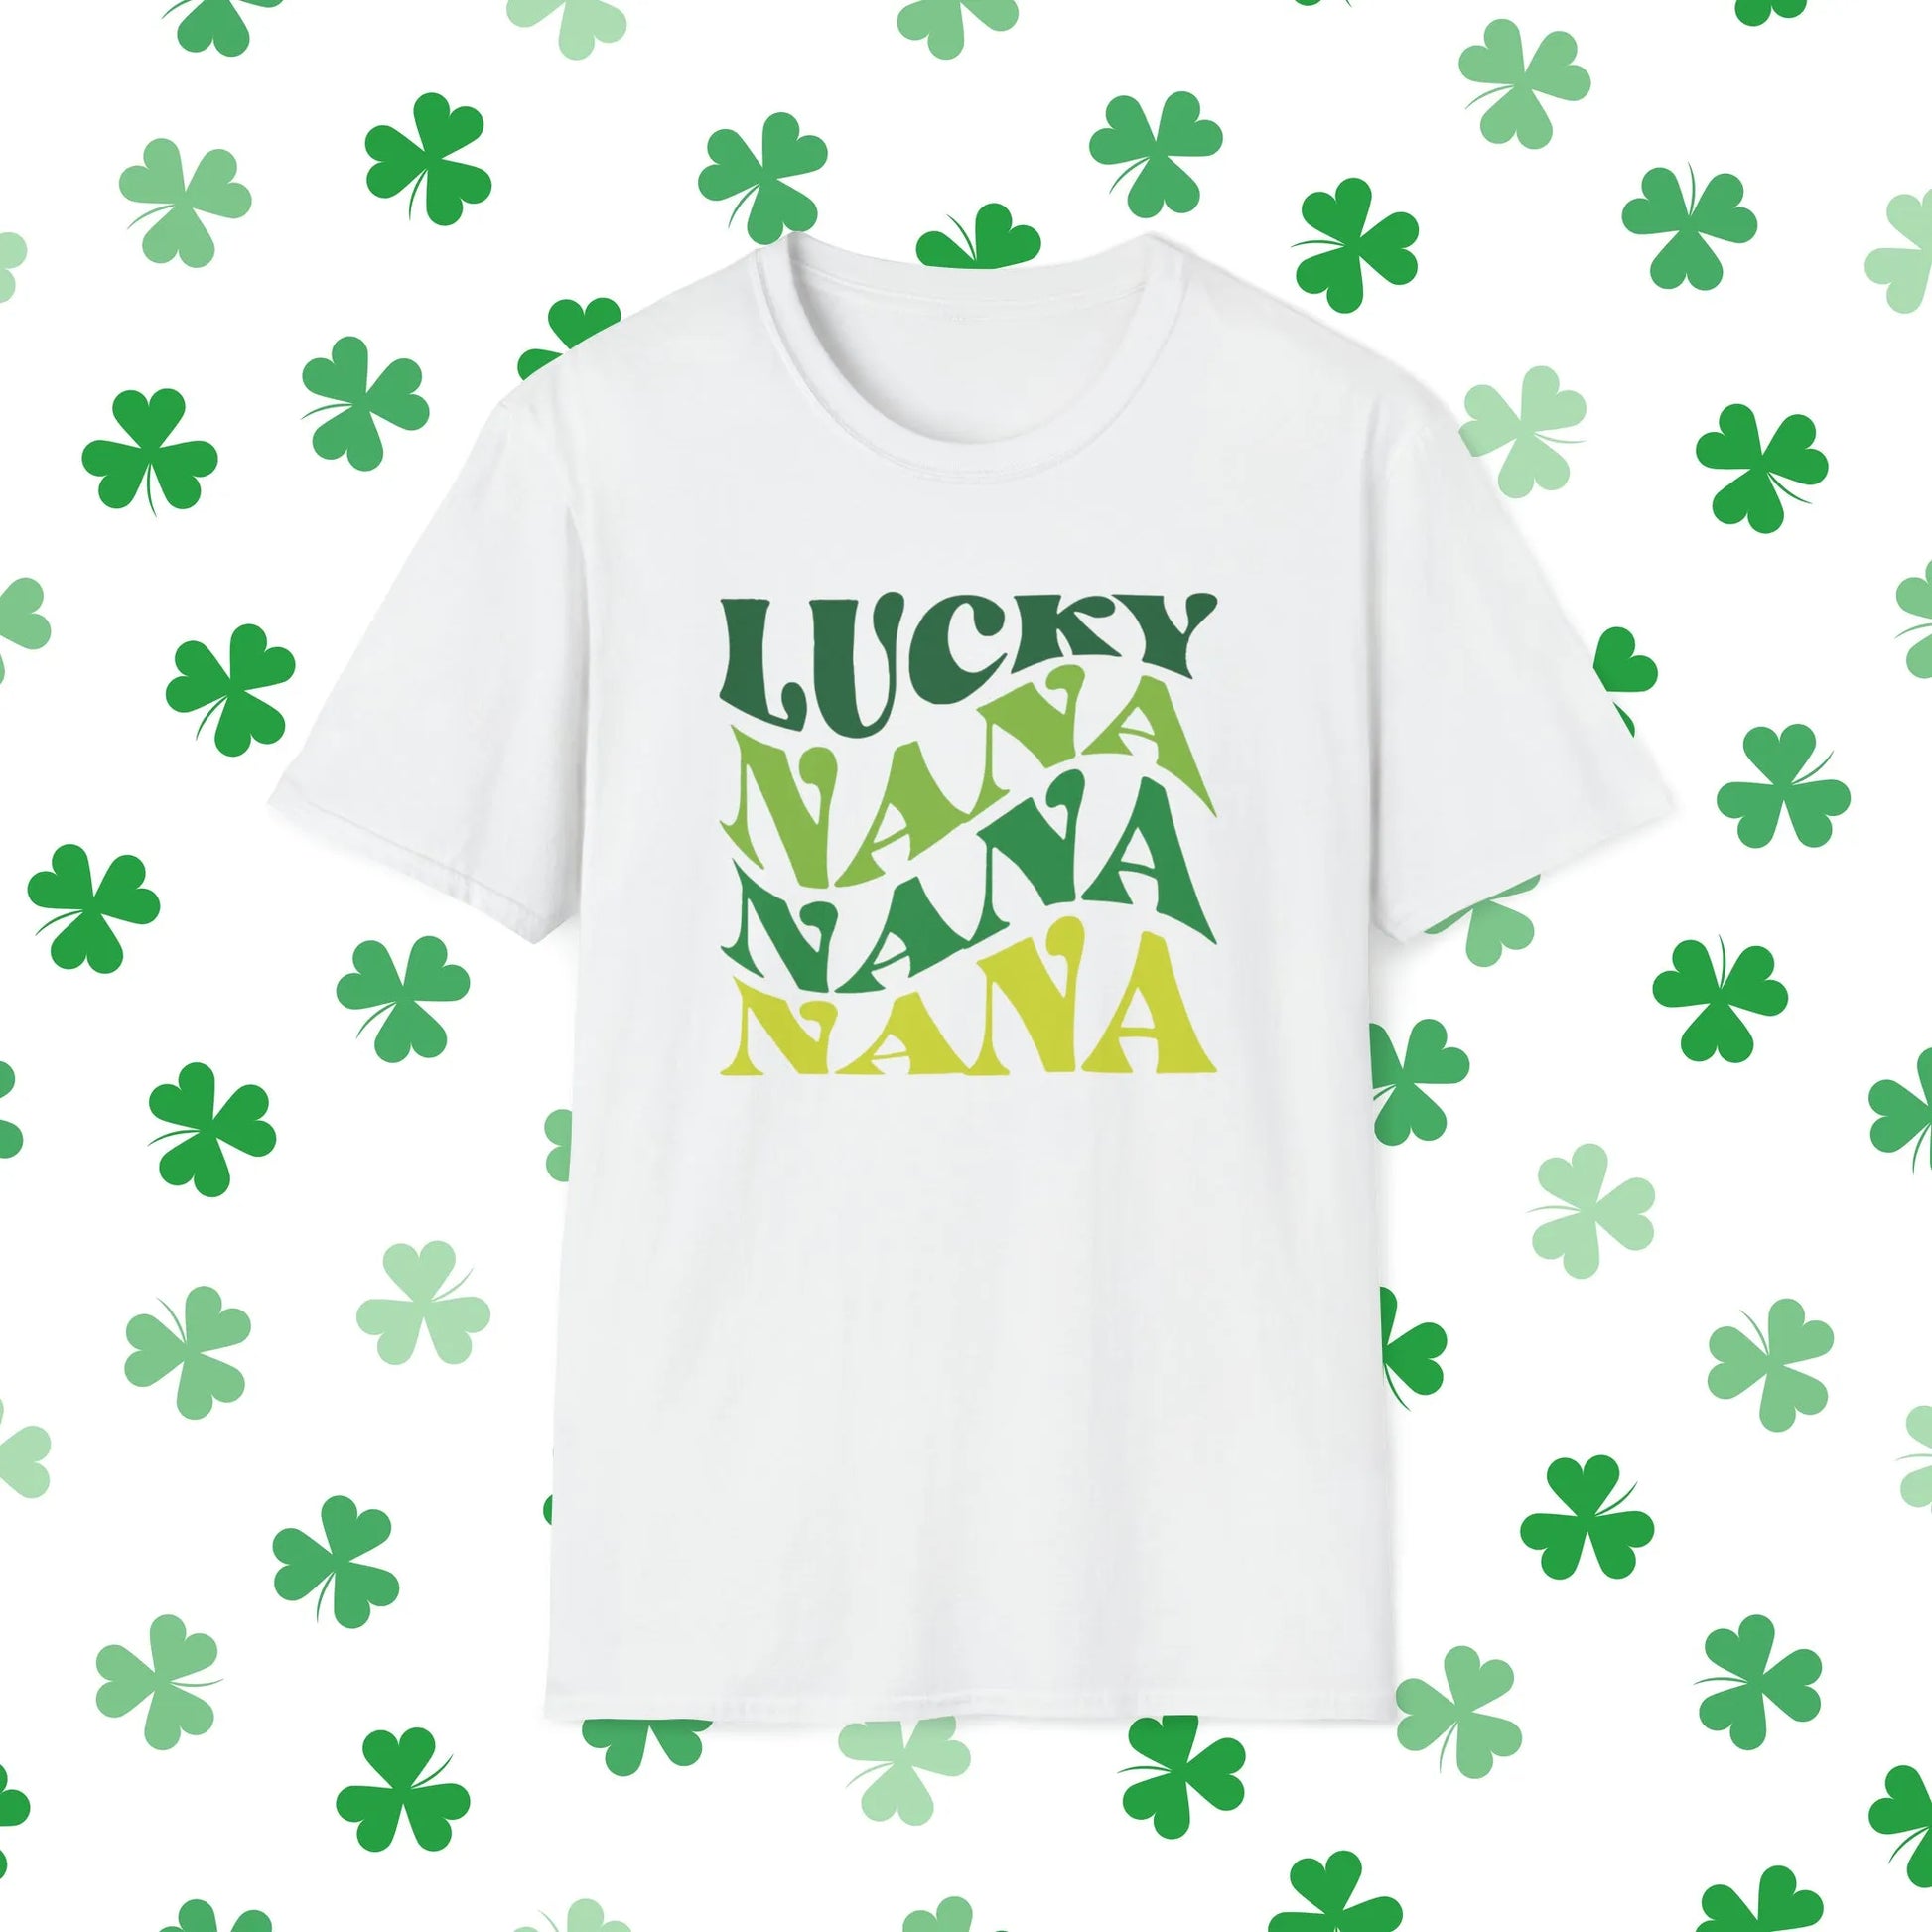 Lucky Nana Nana Nana Retro-Style St. Patrick's Day T-Shirt - Comfort & Charm - St. Patrick's Day Nana Shirt White